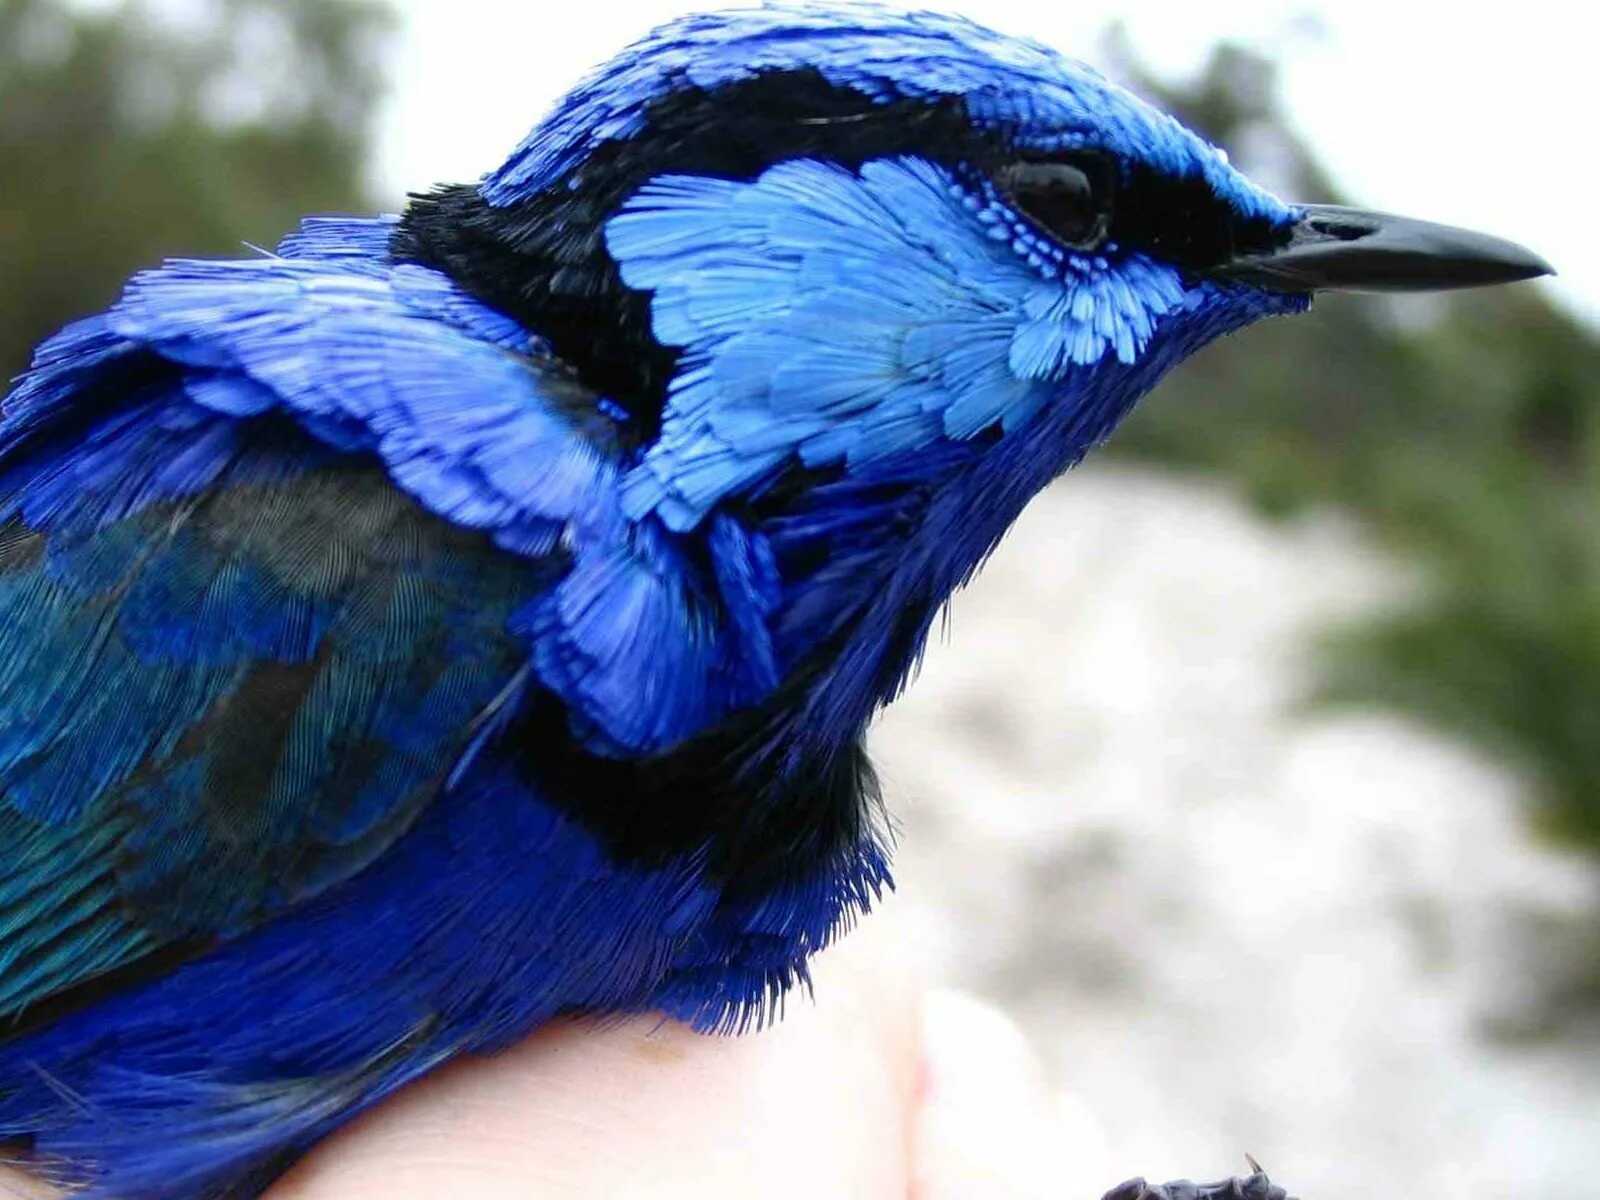 Синий раз. Птица синего цвета. Птица цвета ультрамарин. Синяя птичка. Птицы с голубой окраской.